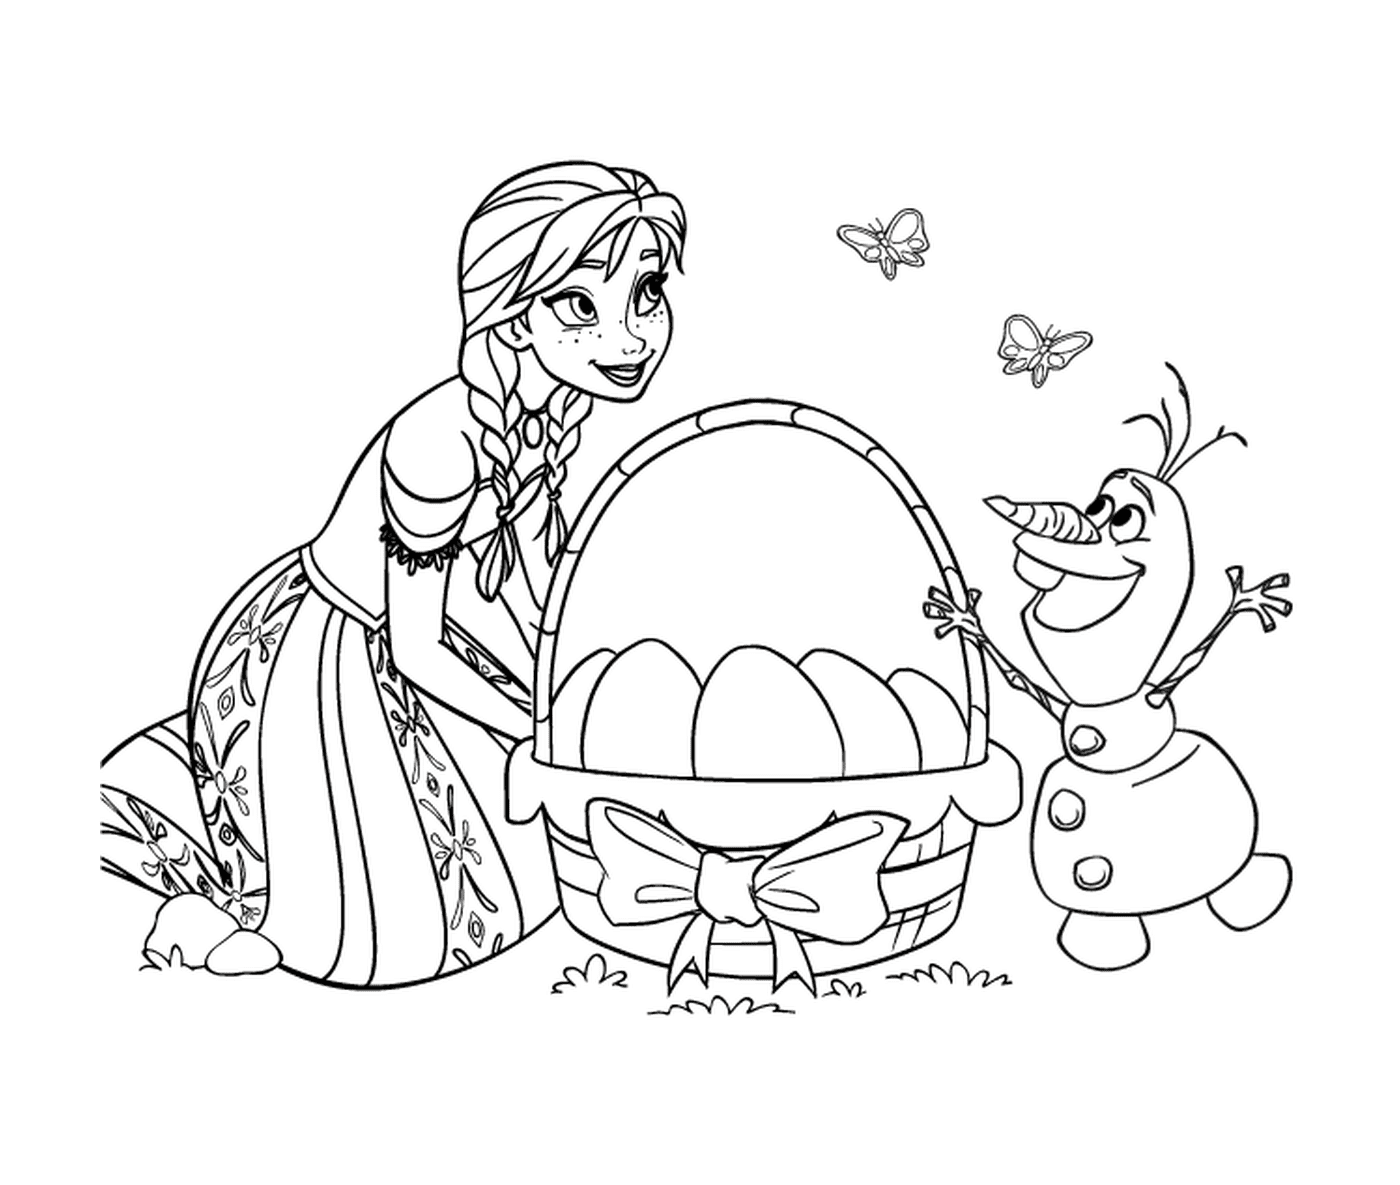   Imprimez Pâques avec Elsa et Olaf de La Reine des neiges 